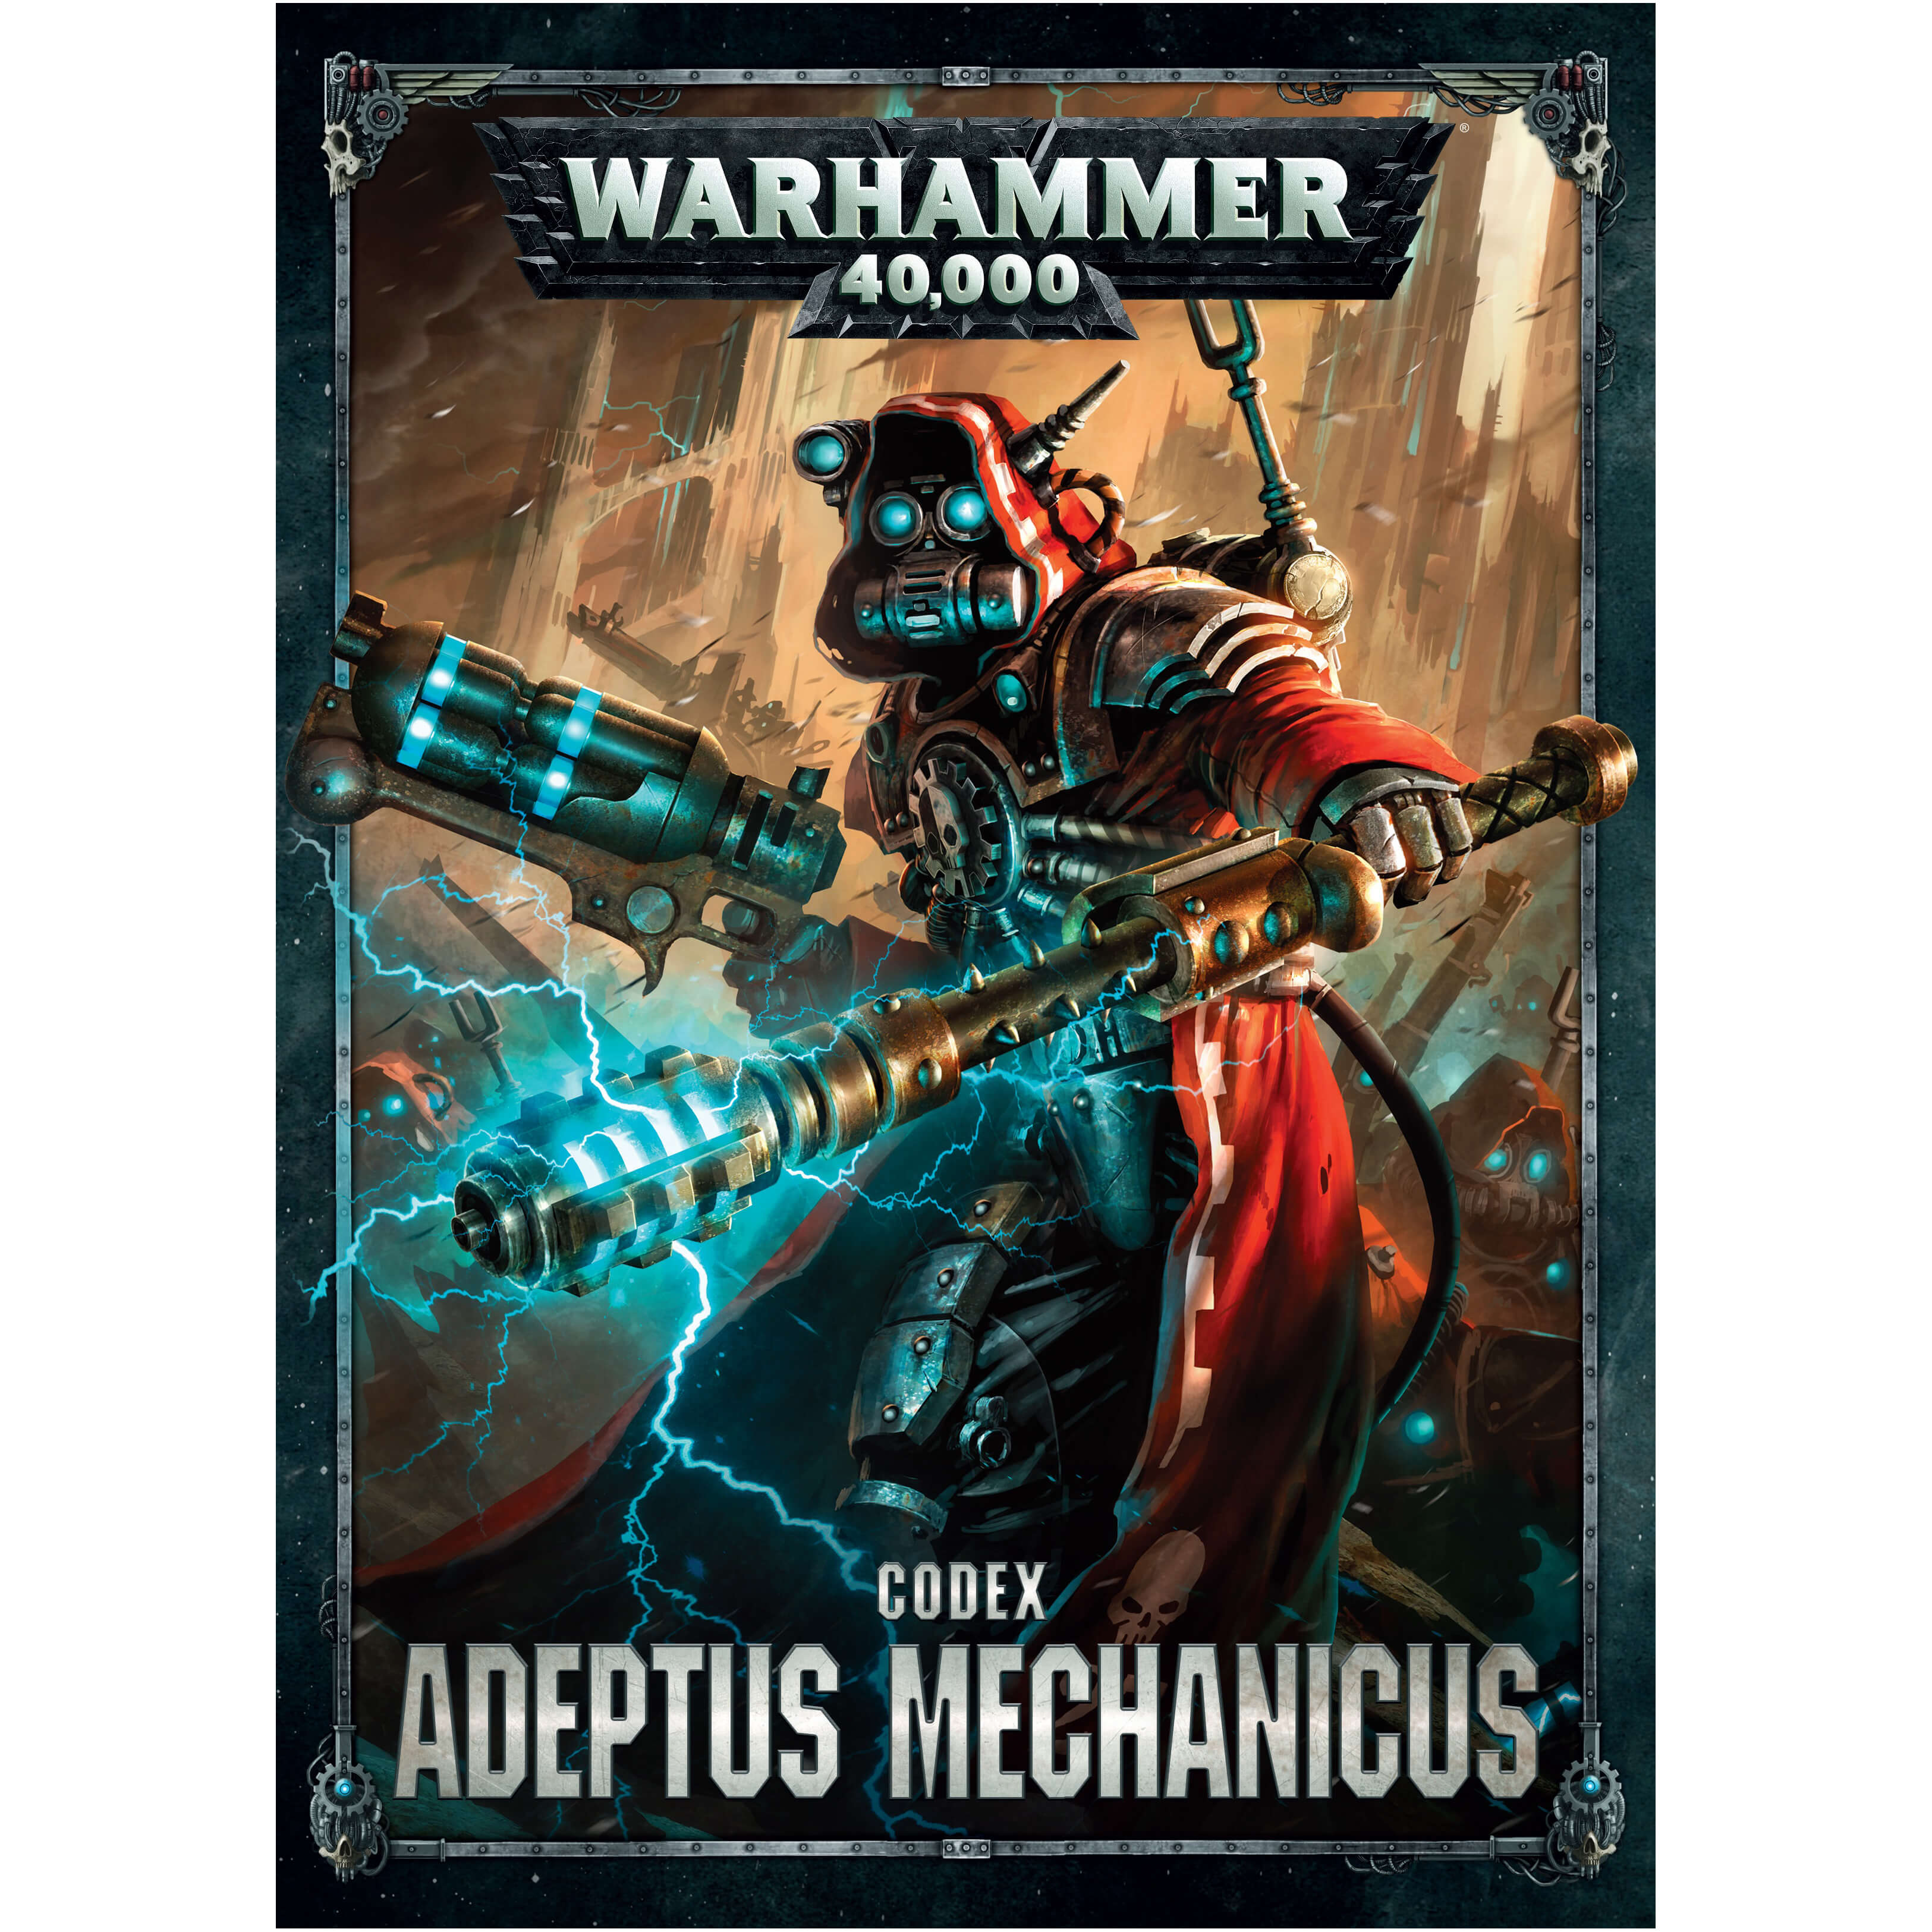 Warhammer 40K Adeptus Mechanicus Codex